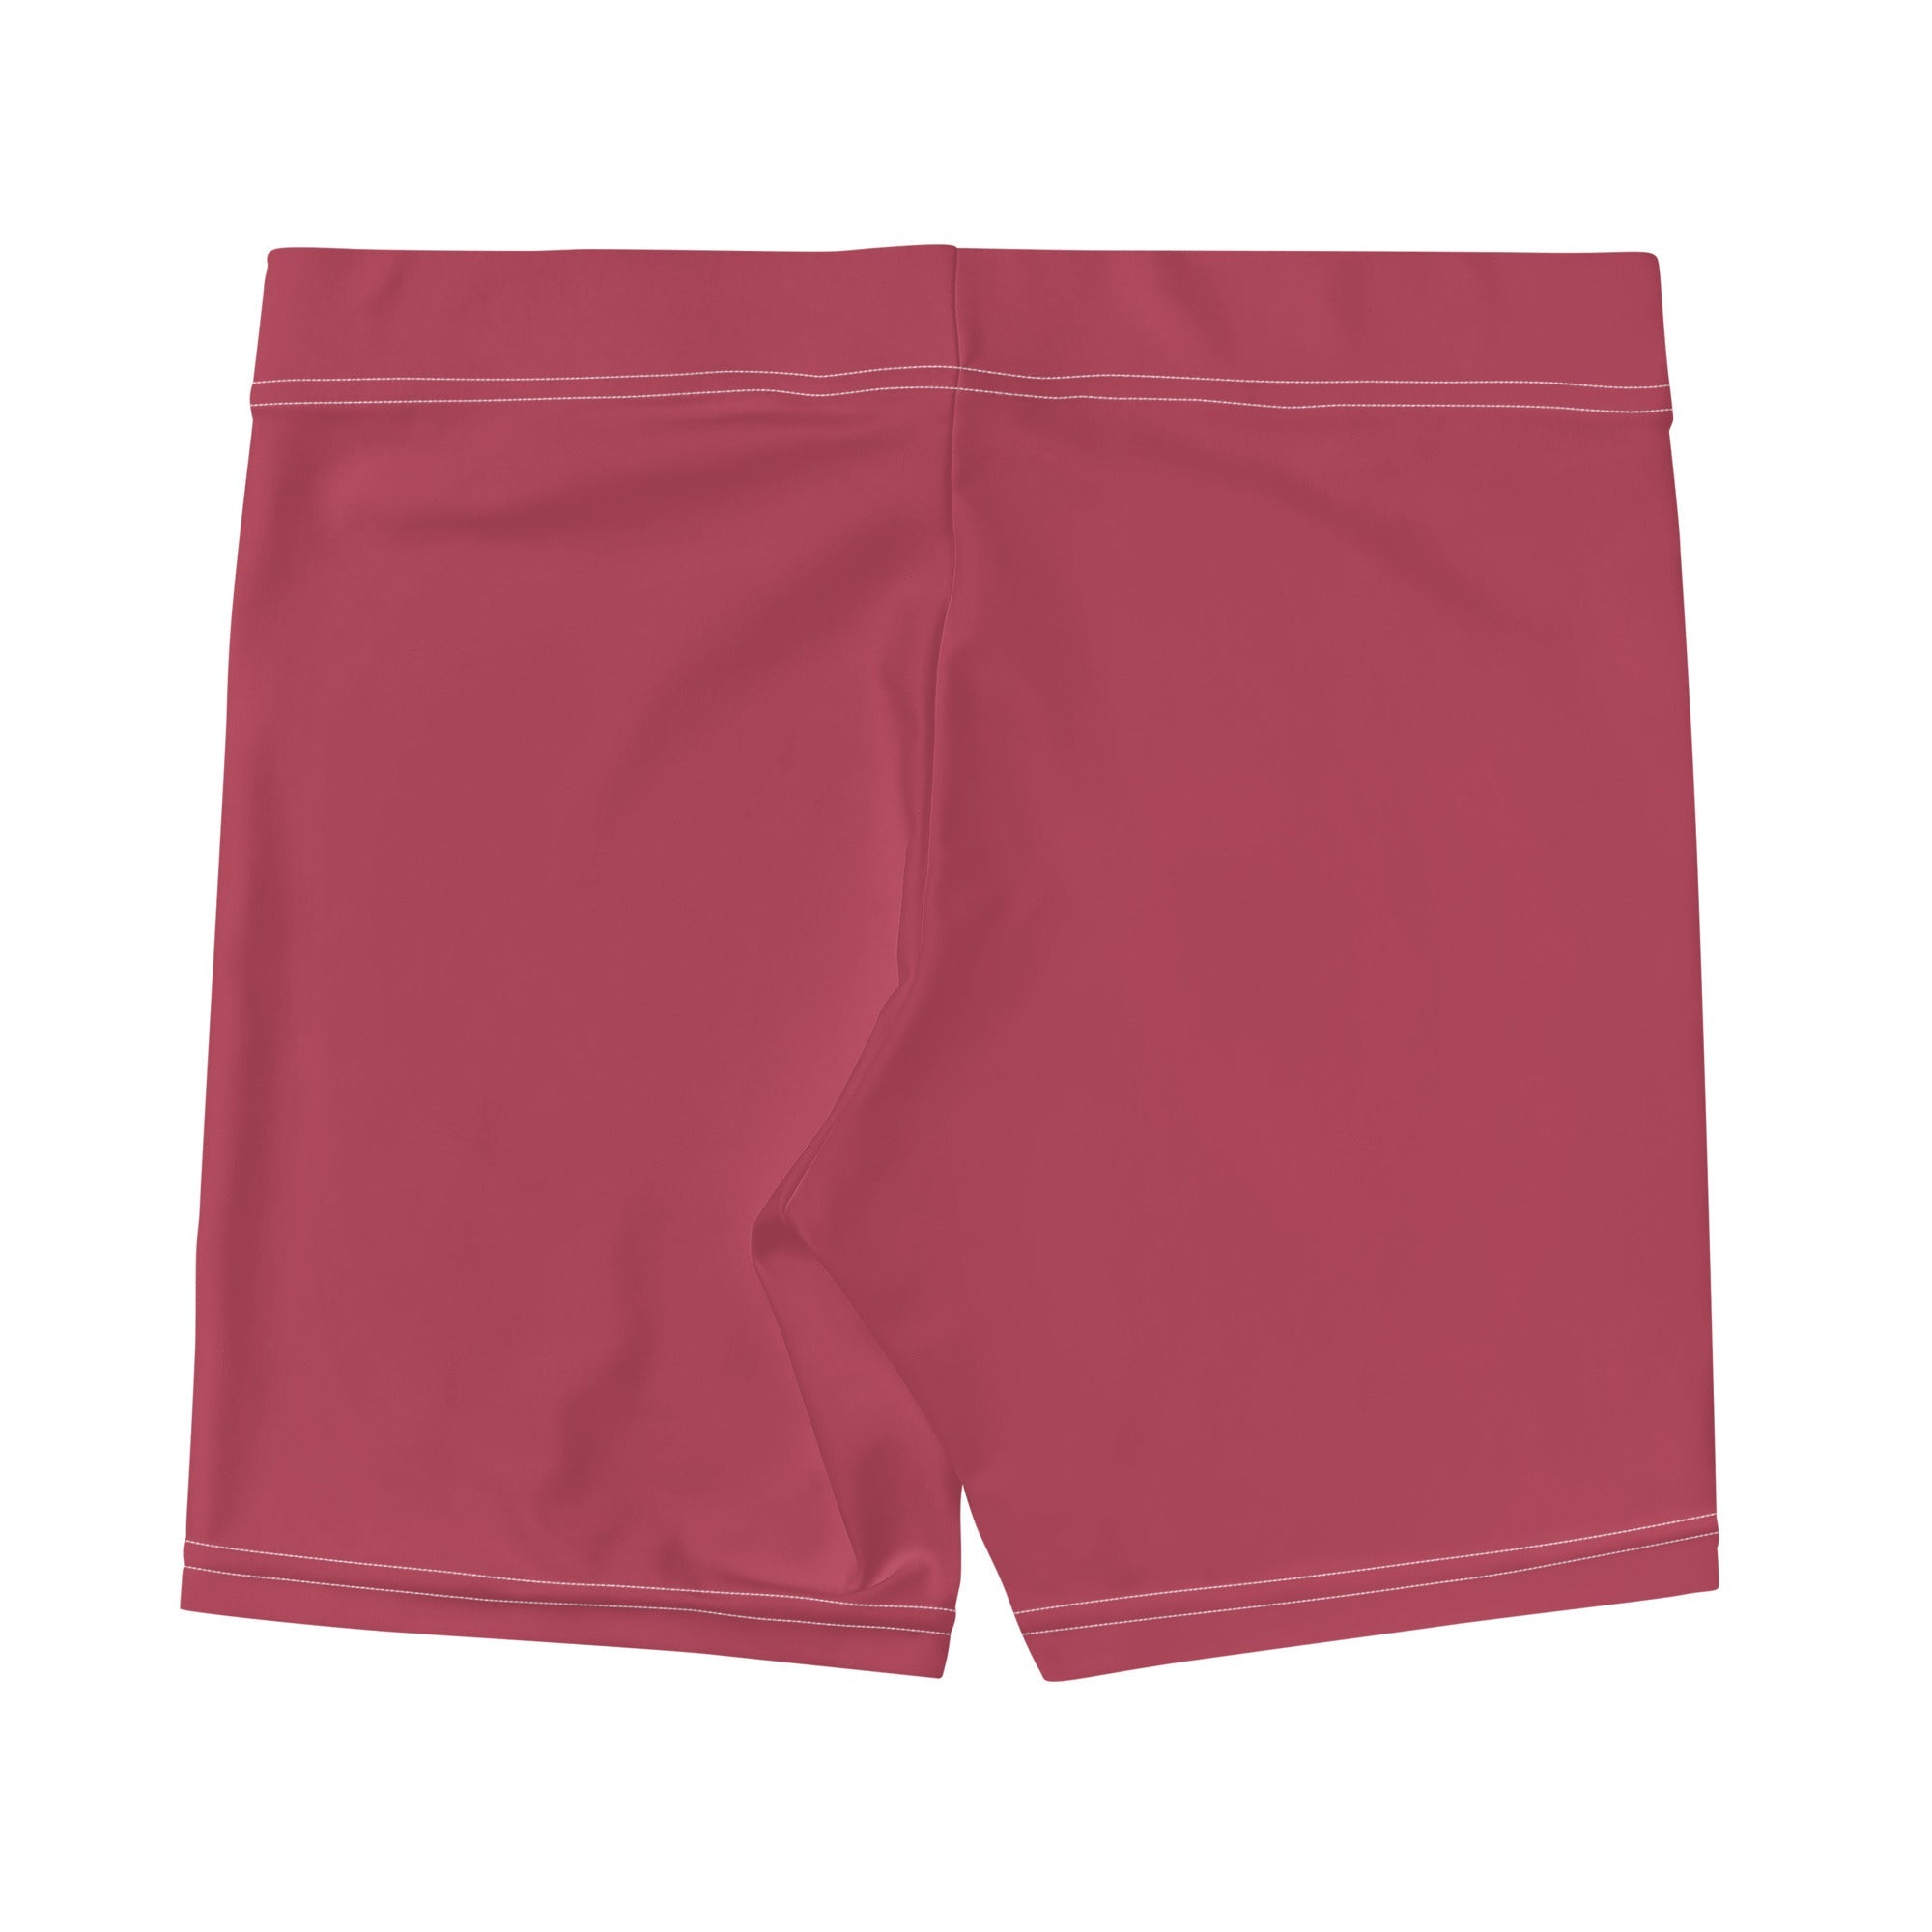 Hippie Pink Gym Shorts - Women's Gym Shorts - DRAGON FOXX™ - Hippie Pink Gym Shorts - 1155720_9296 - XS - Hippie Pink - Gym Shorts - Dragon Foxx™ - Dragon Foxx™ Gym Shorts - Dragon Foxx™ Hippie Pink Gym Shorts